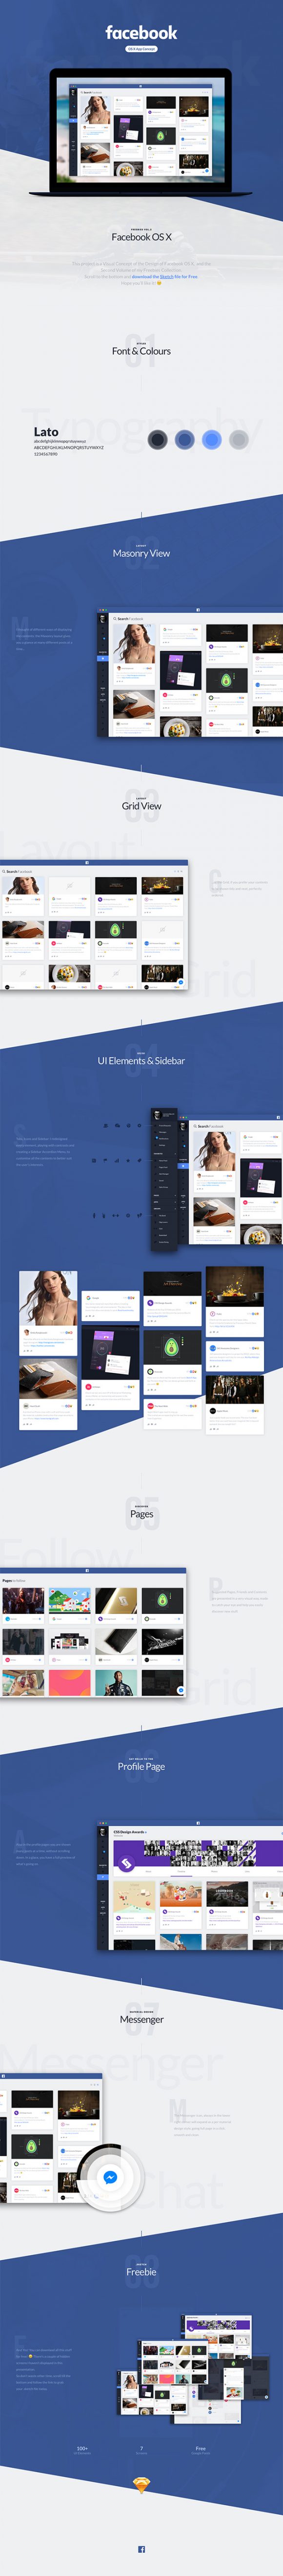 Facebook OS X design concept - Full Preview